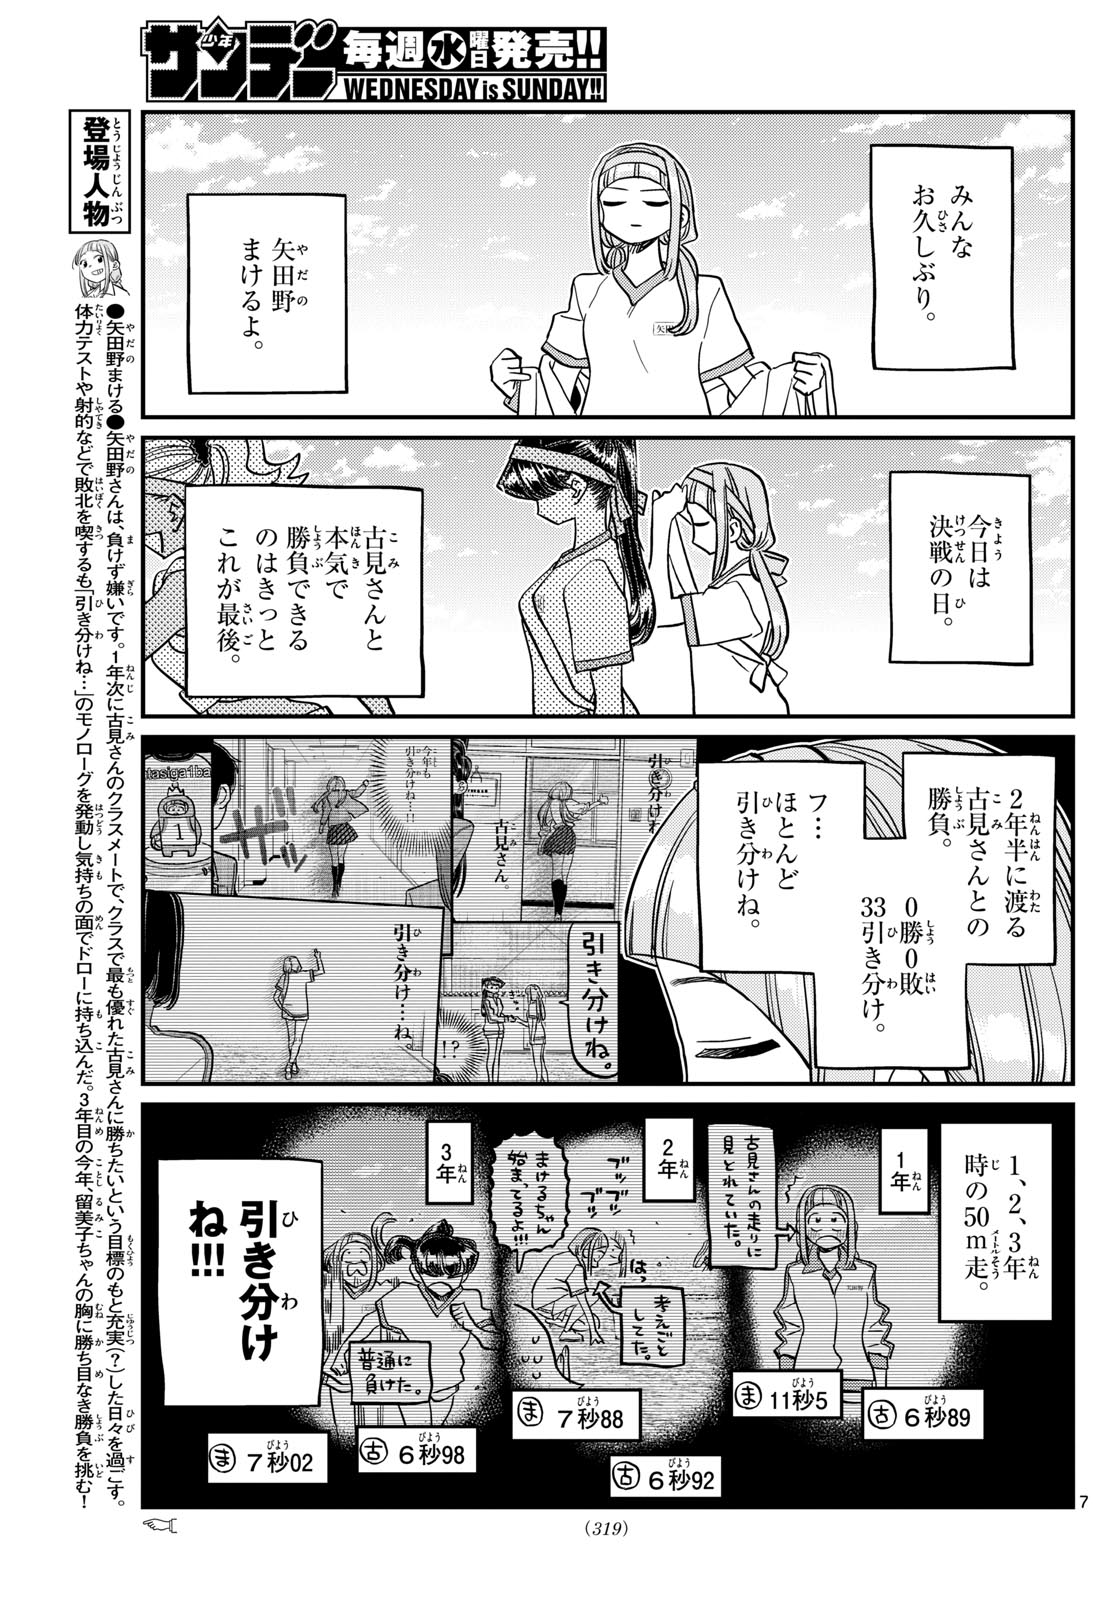 Komi-san wa Komyushou Desu - Chapter 431 - Page 7